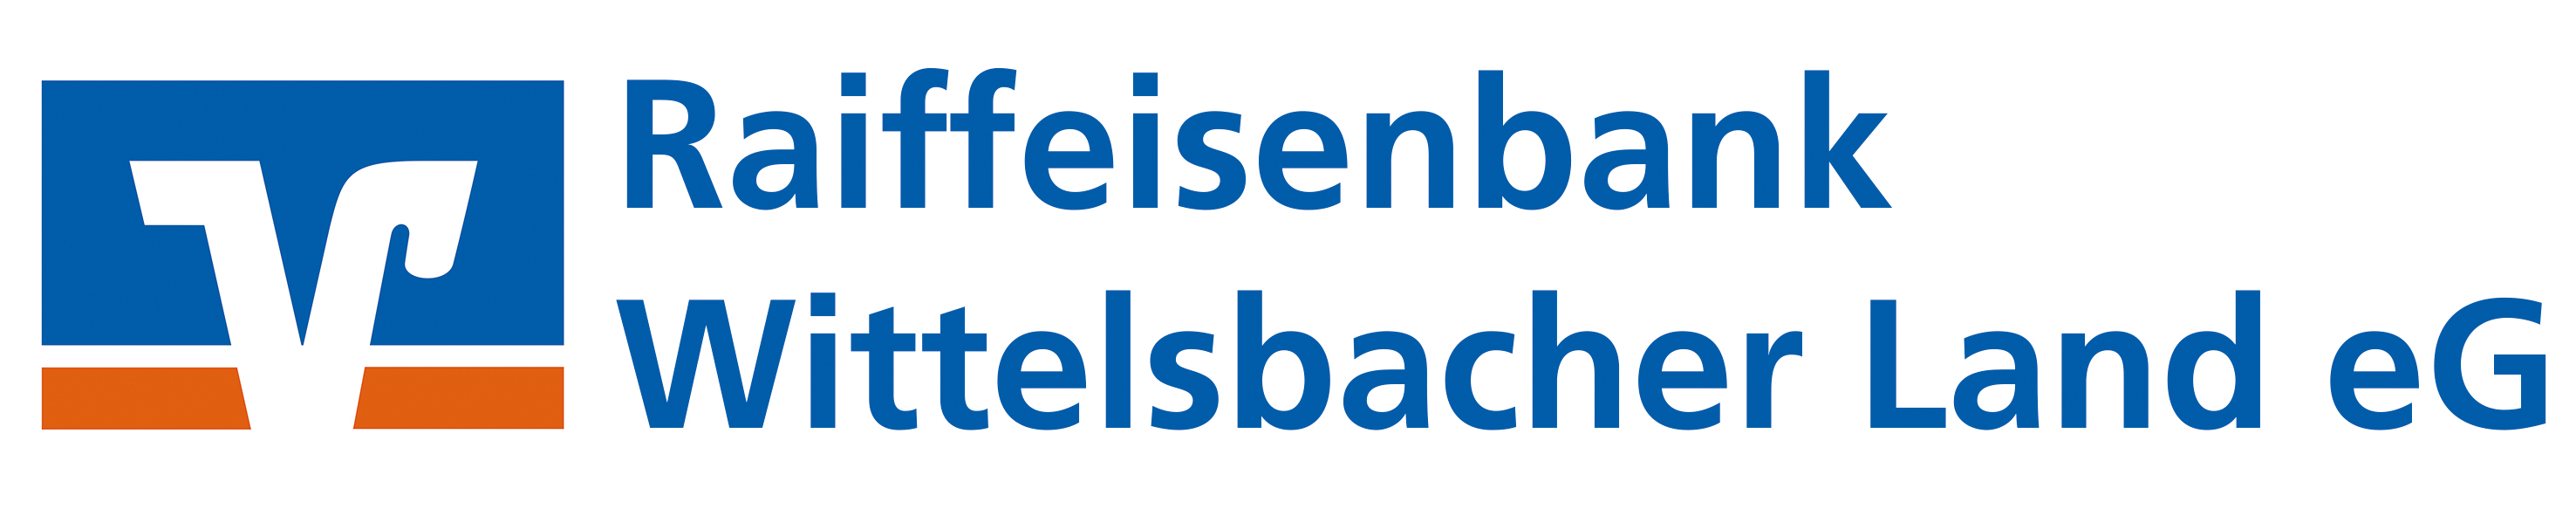 Logo_Wittelsbacher_Land_300_dpi.jpg